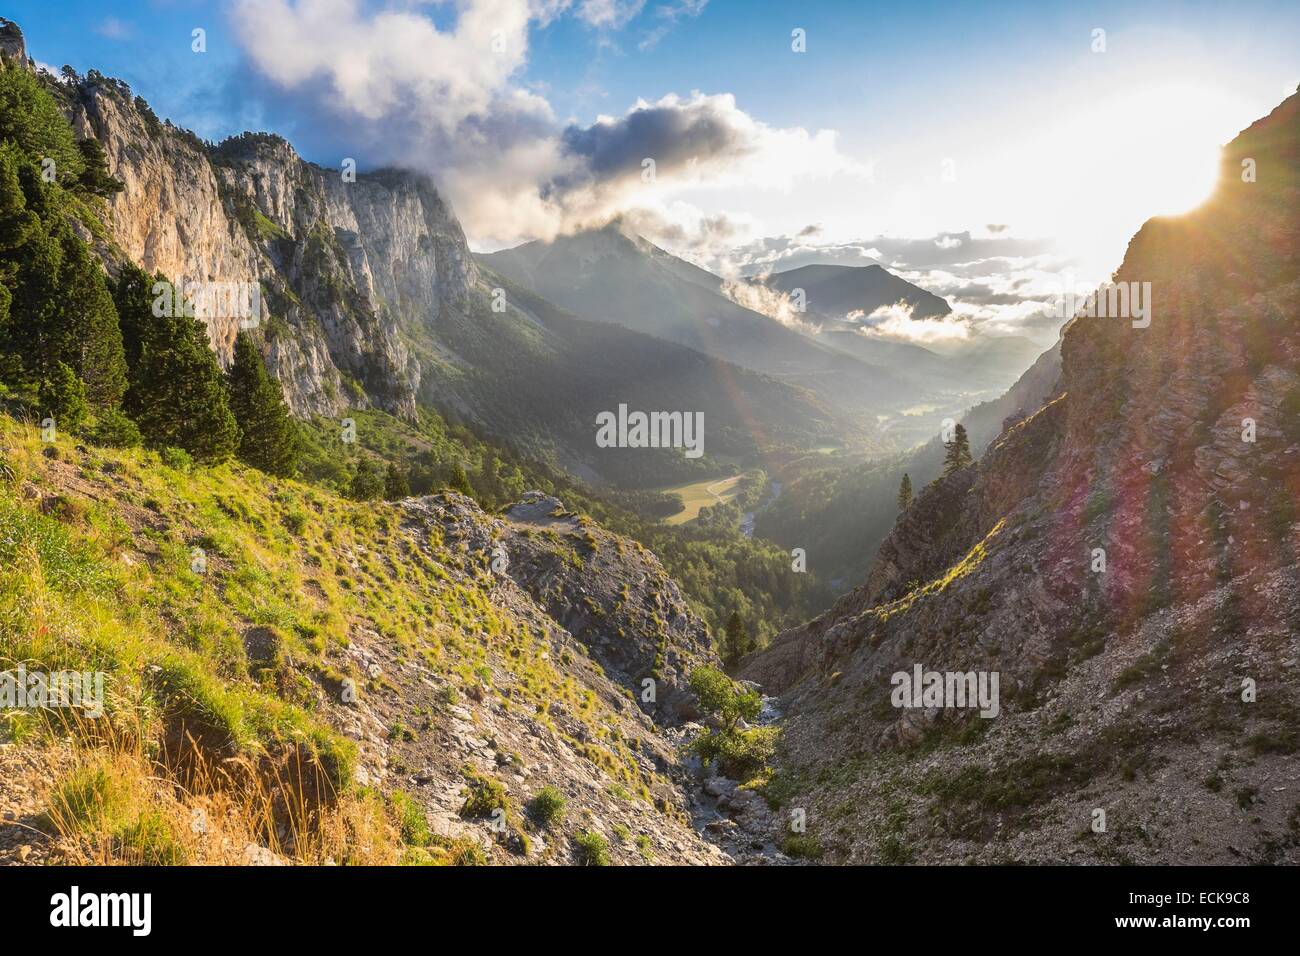 France, Isère, parc naturel régional du Vercors, vue panoramique depuis le pas de l'aiguille (alt : 1622m) sur le Vercors Highlands Banque D'Images